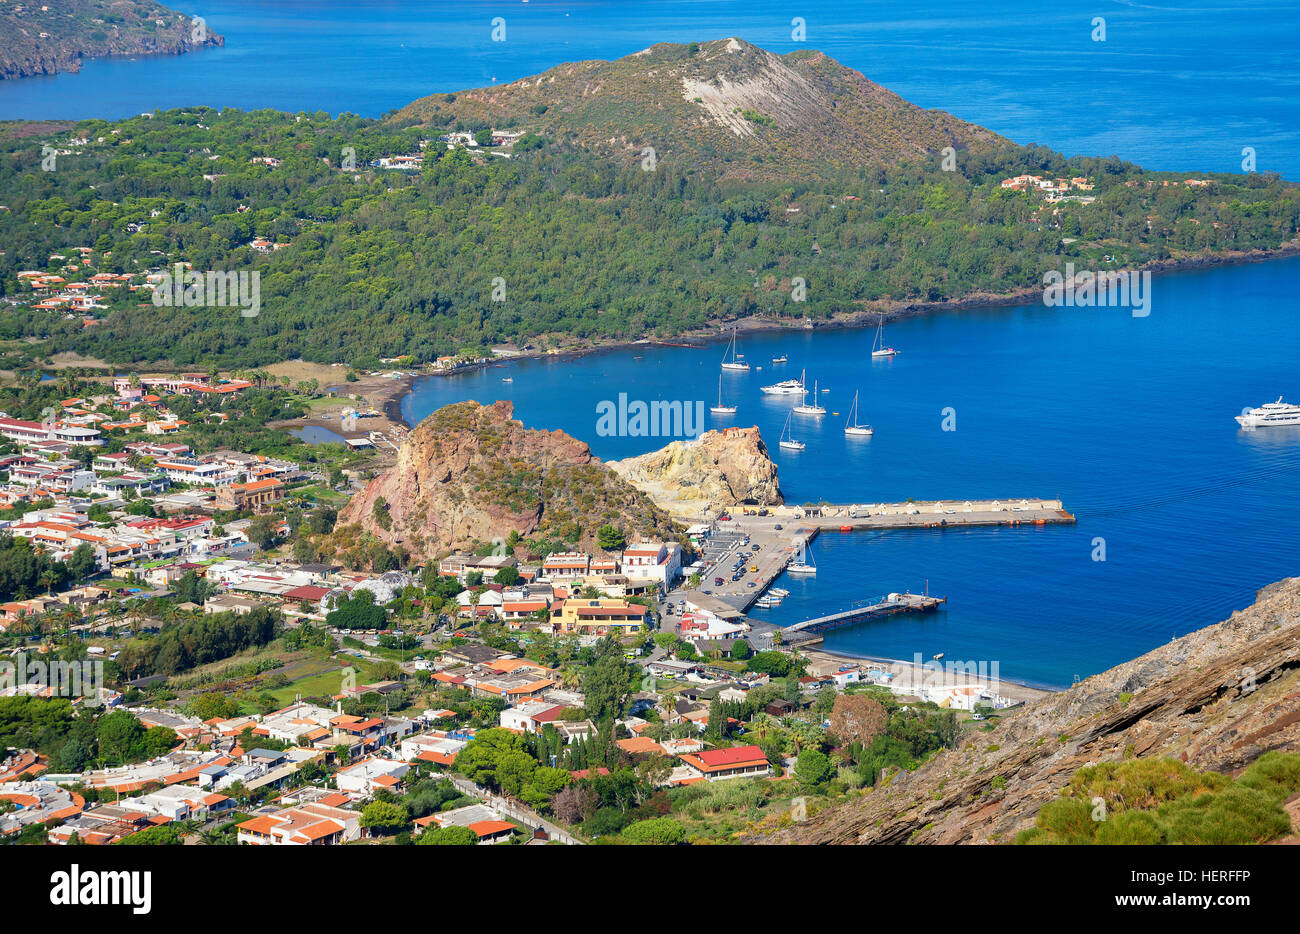 Porto di Levante und Vulcanello, Vulcano Island, Äolischen Inseln, das Tyrrhenische Meer, Italien Stockfoto